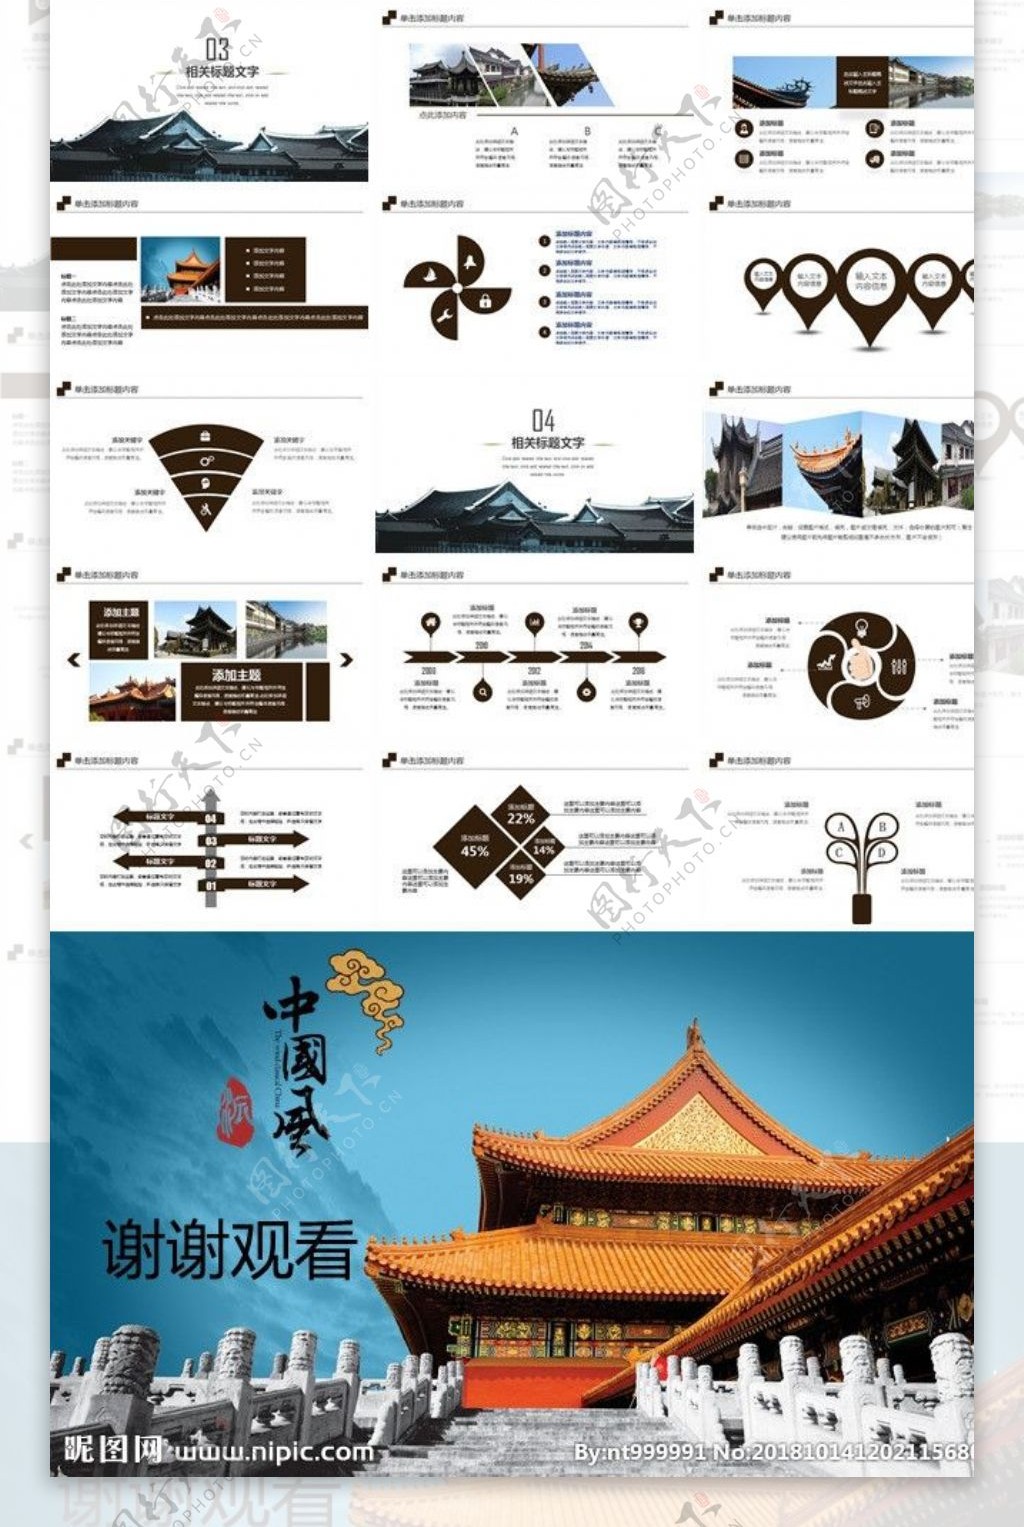 中国风古典建筑旅游PPT模板